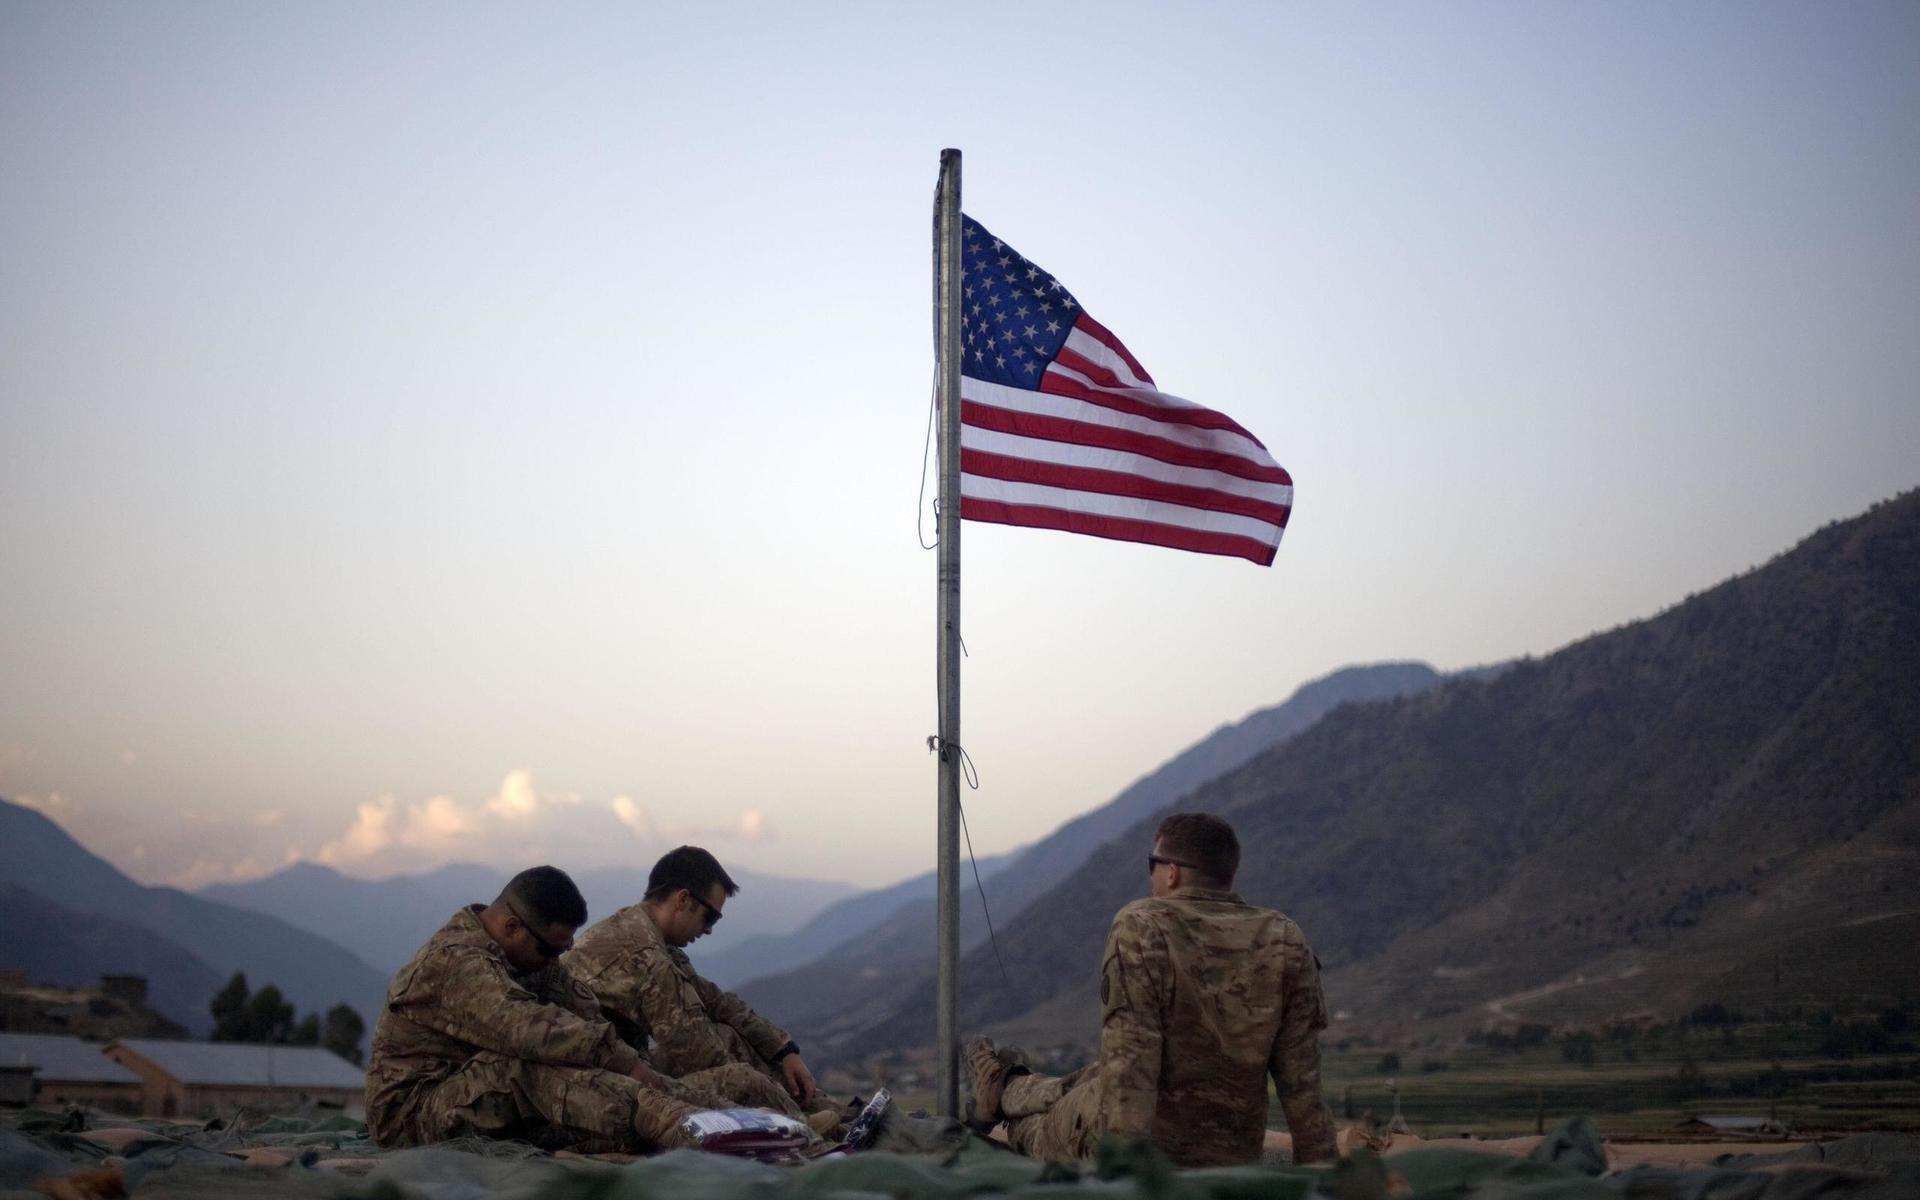 USA:s flagga i Afghanistan - snart kan den halas efter 18 års krig. Våldet fortsätter, men medan talibanerna för samtal med regeringen om fred kan Donald Trump ta hem huvuddelen av de amerikanska trupperna.